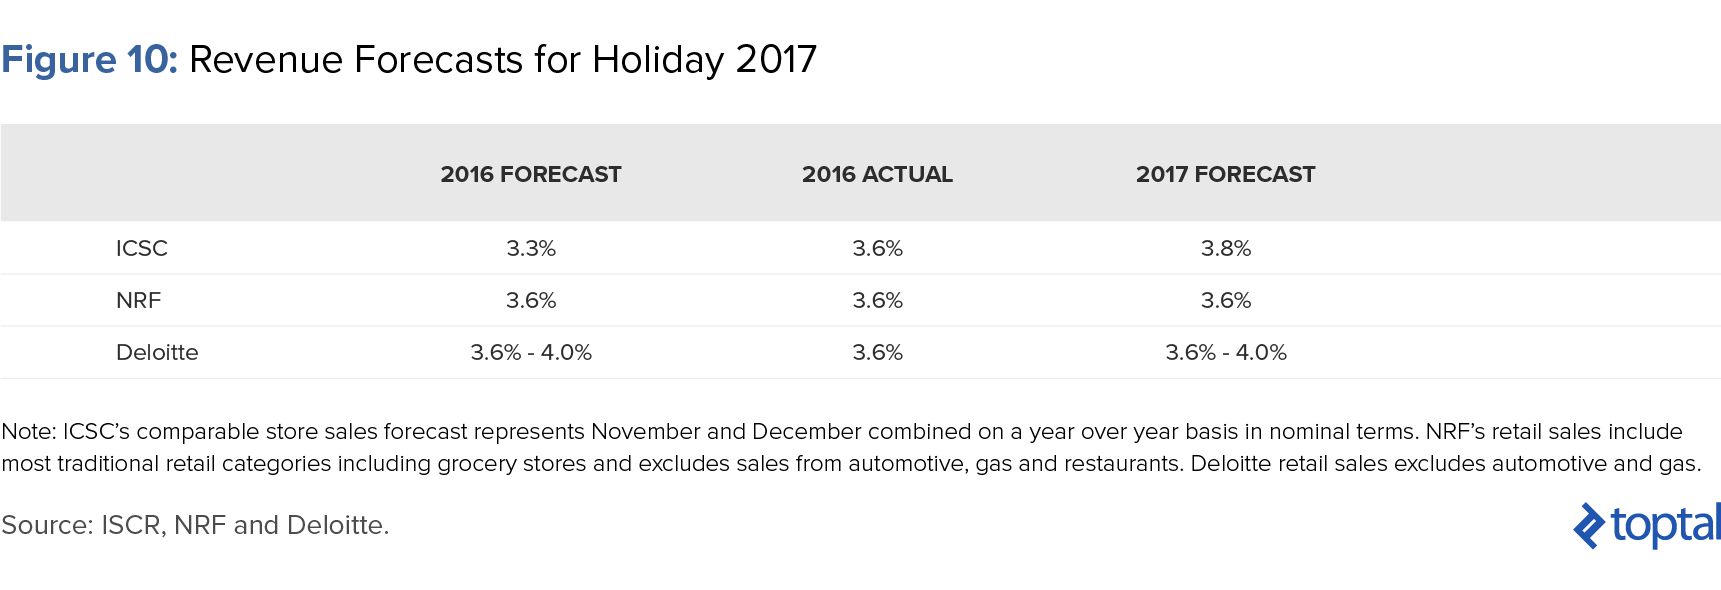 图10:2017年假日收入预测